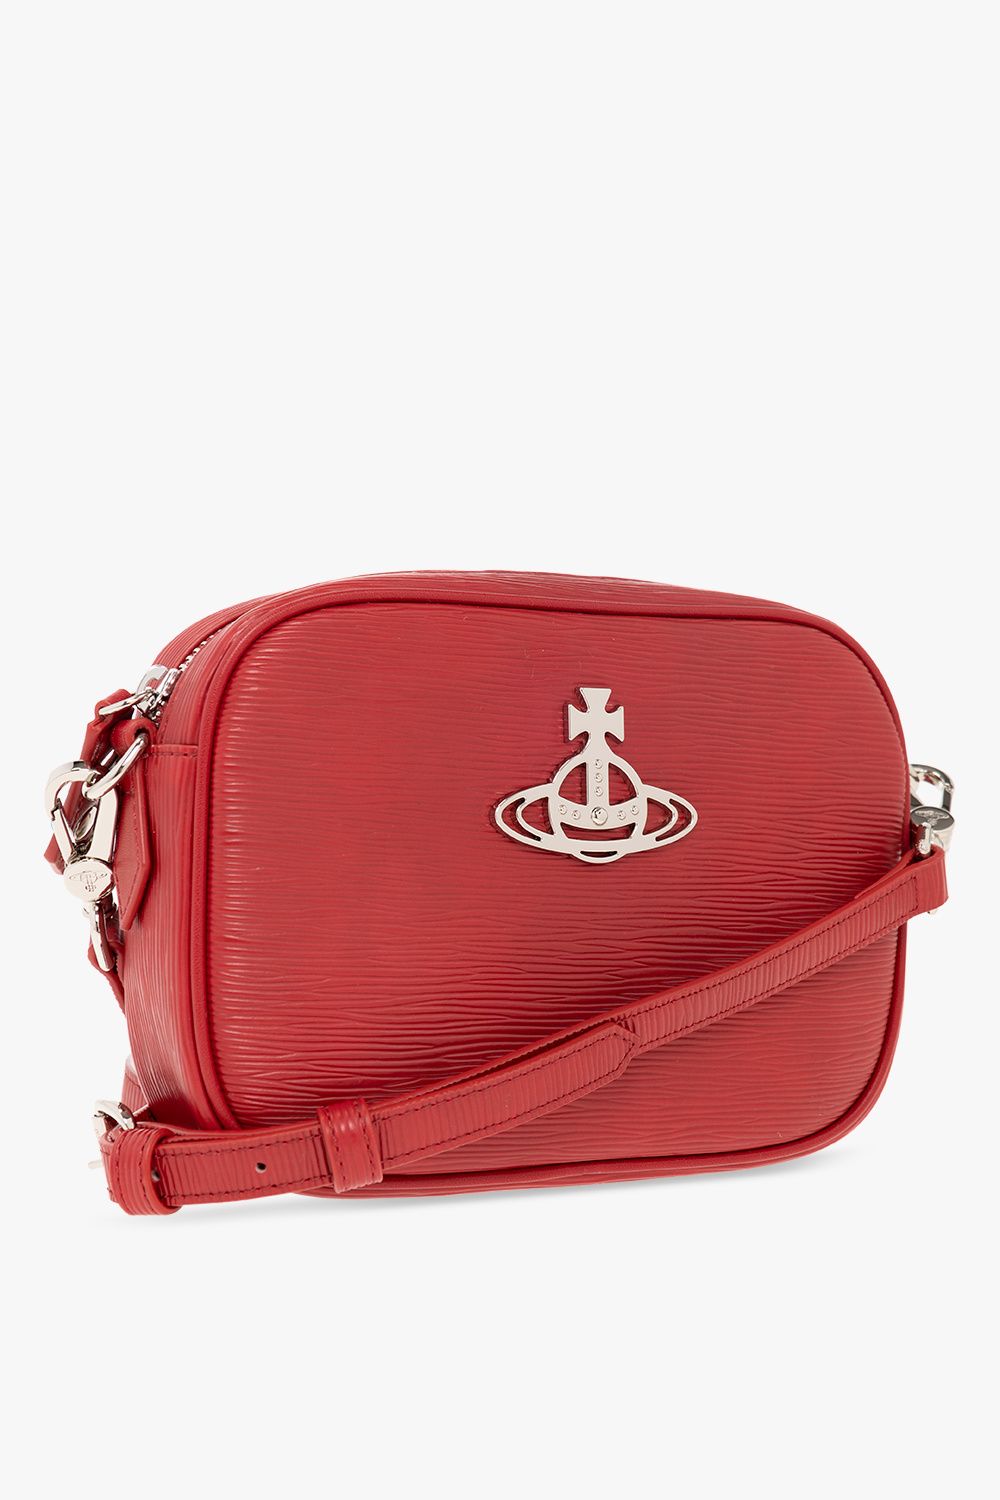 Vivienne Westwood ‘Anna’ shoulder Handbag bag